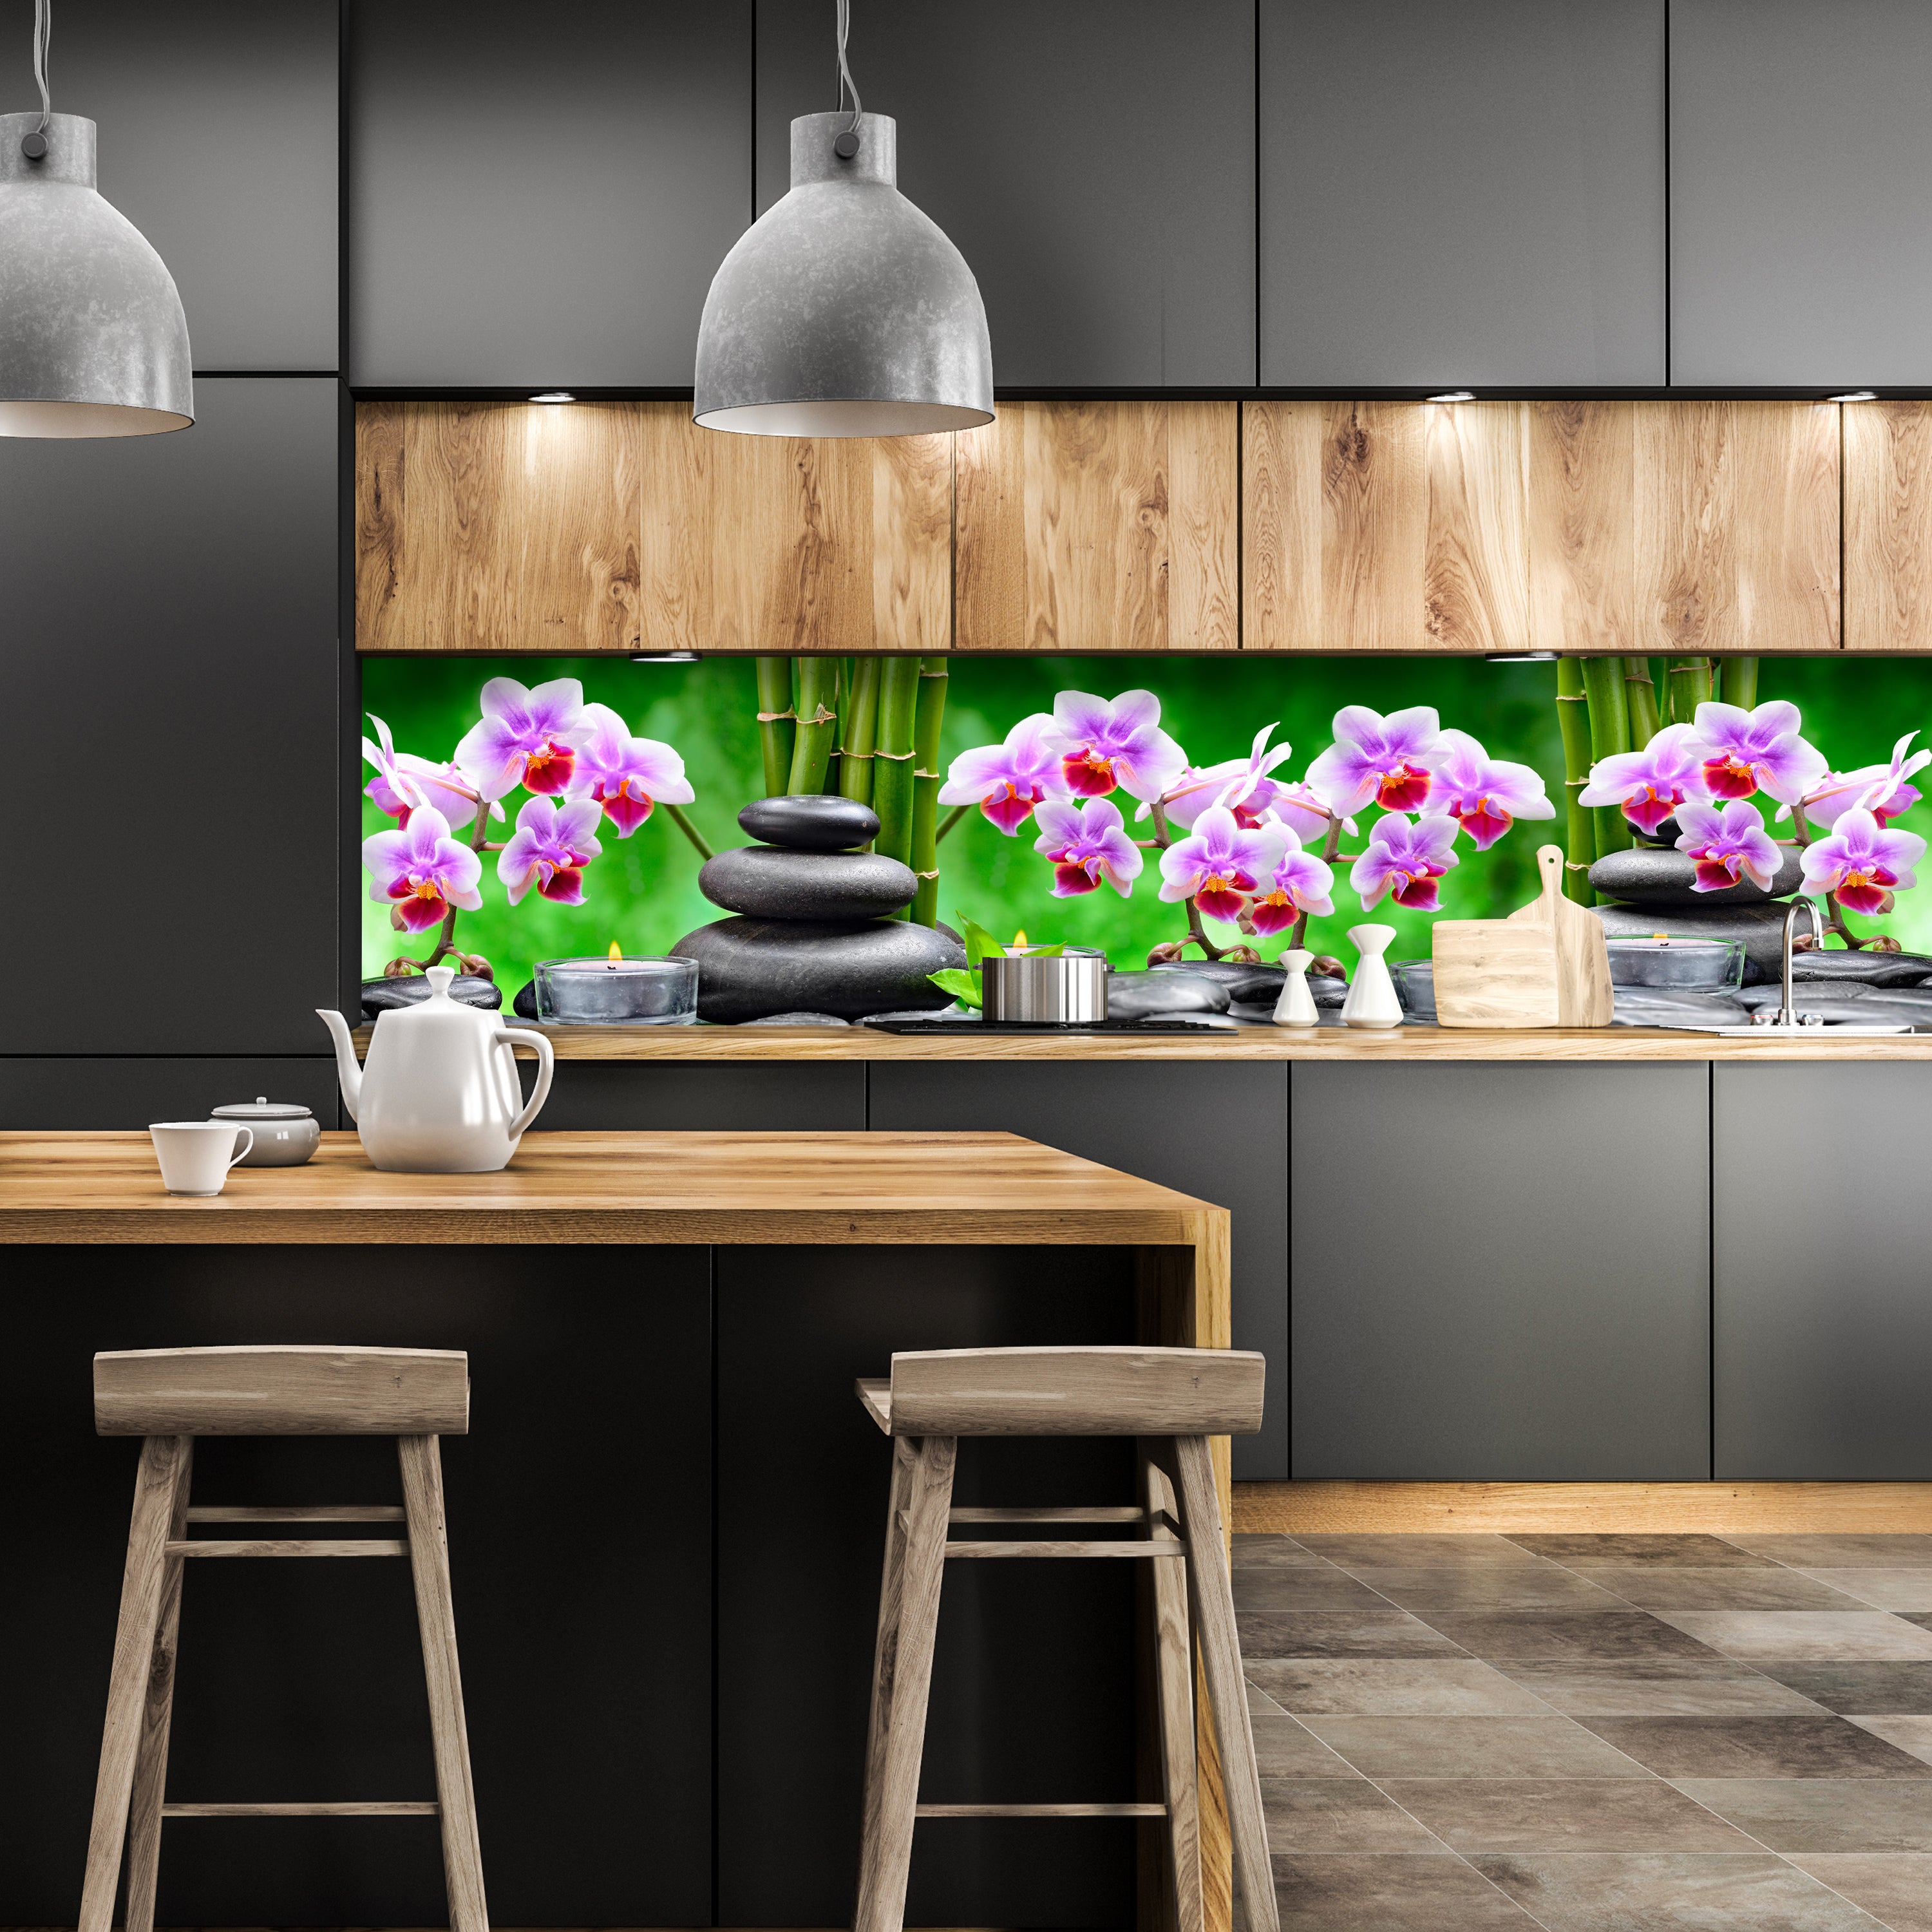 Küchenrückwand Steine schwarz orchidee bambus kerzen M1350 entdecken - Bild 1